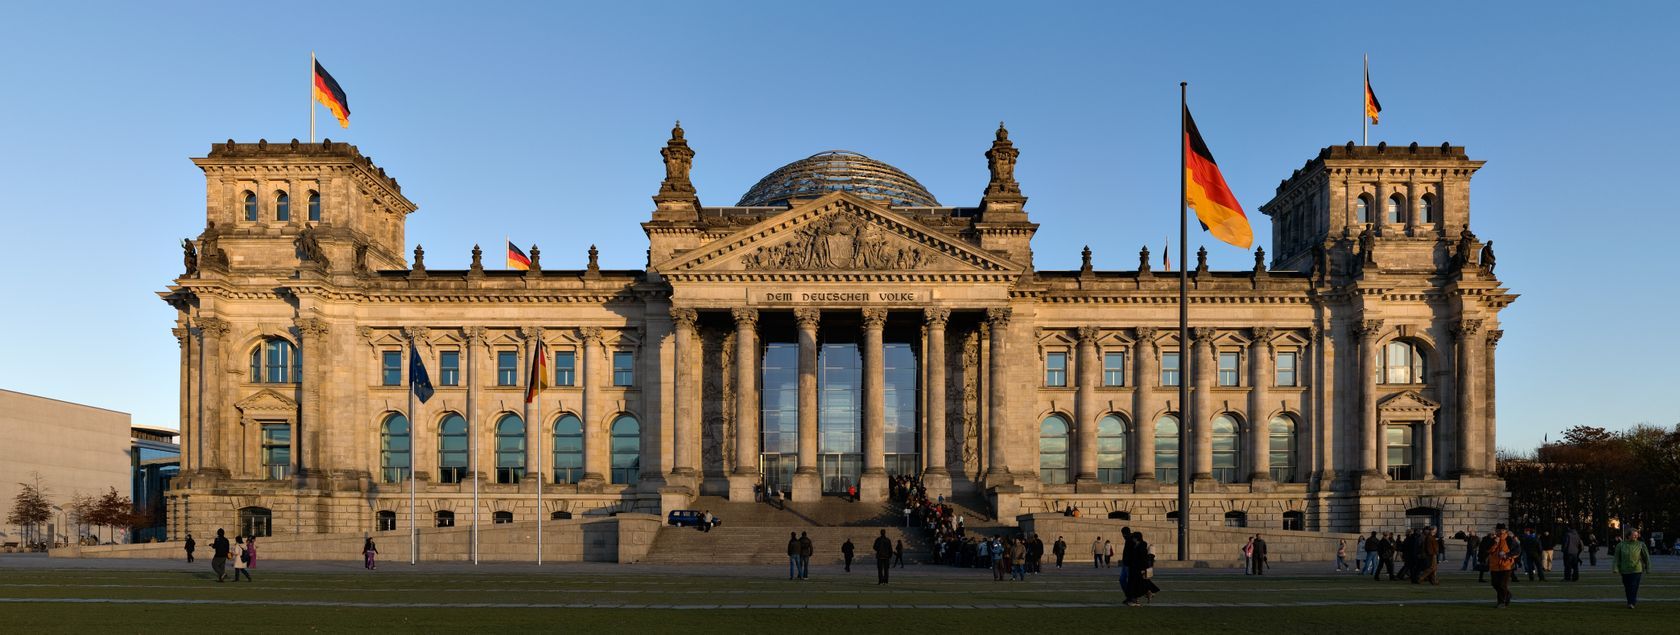 2017-09 - Reichstag Berlin.jpg